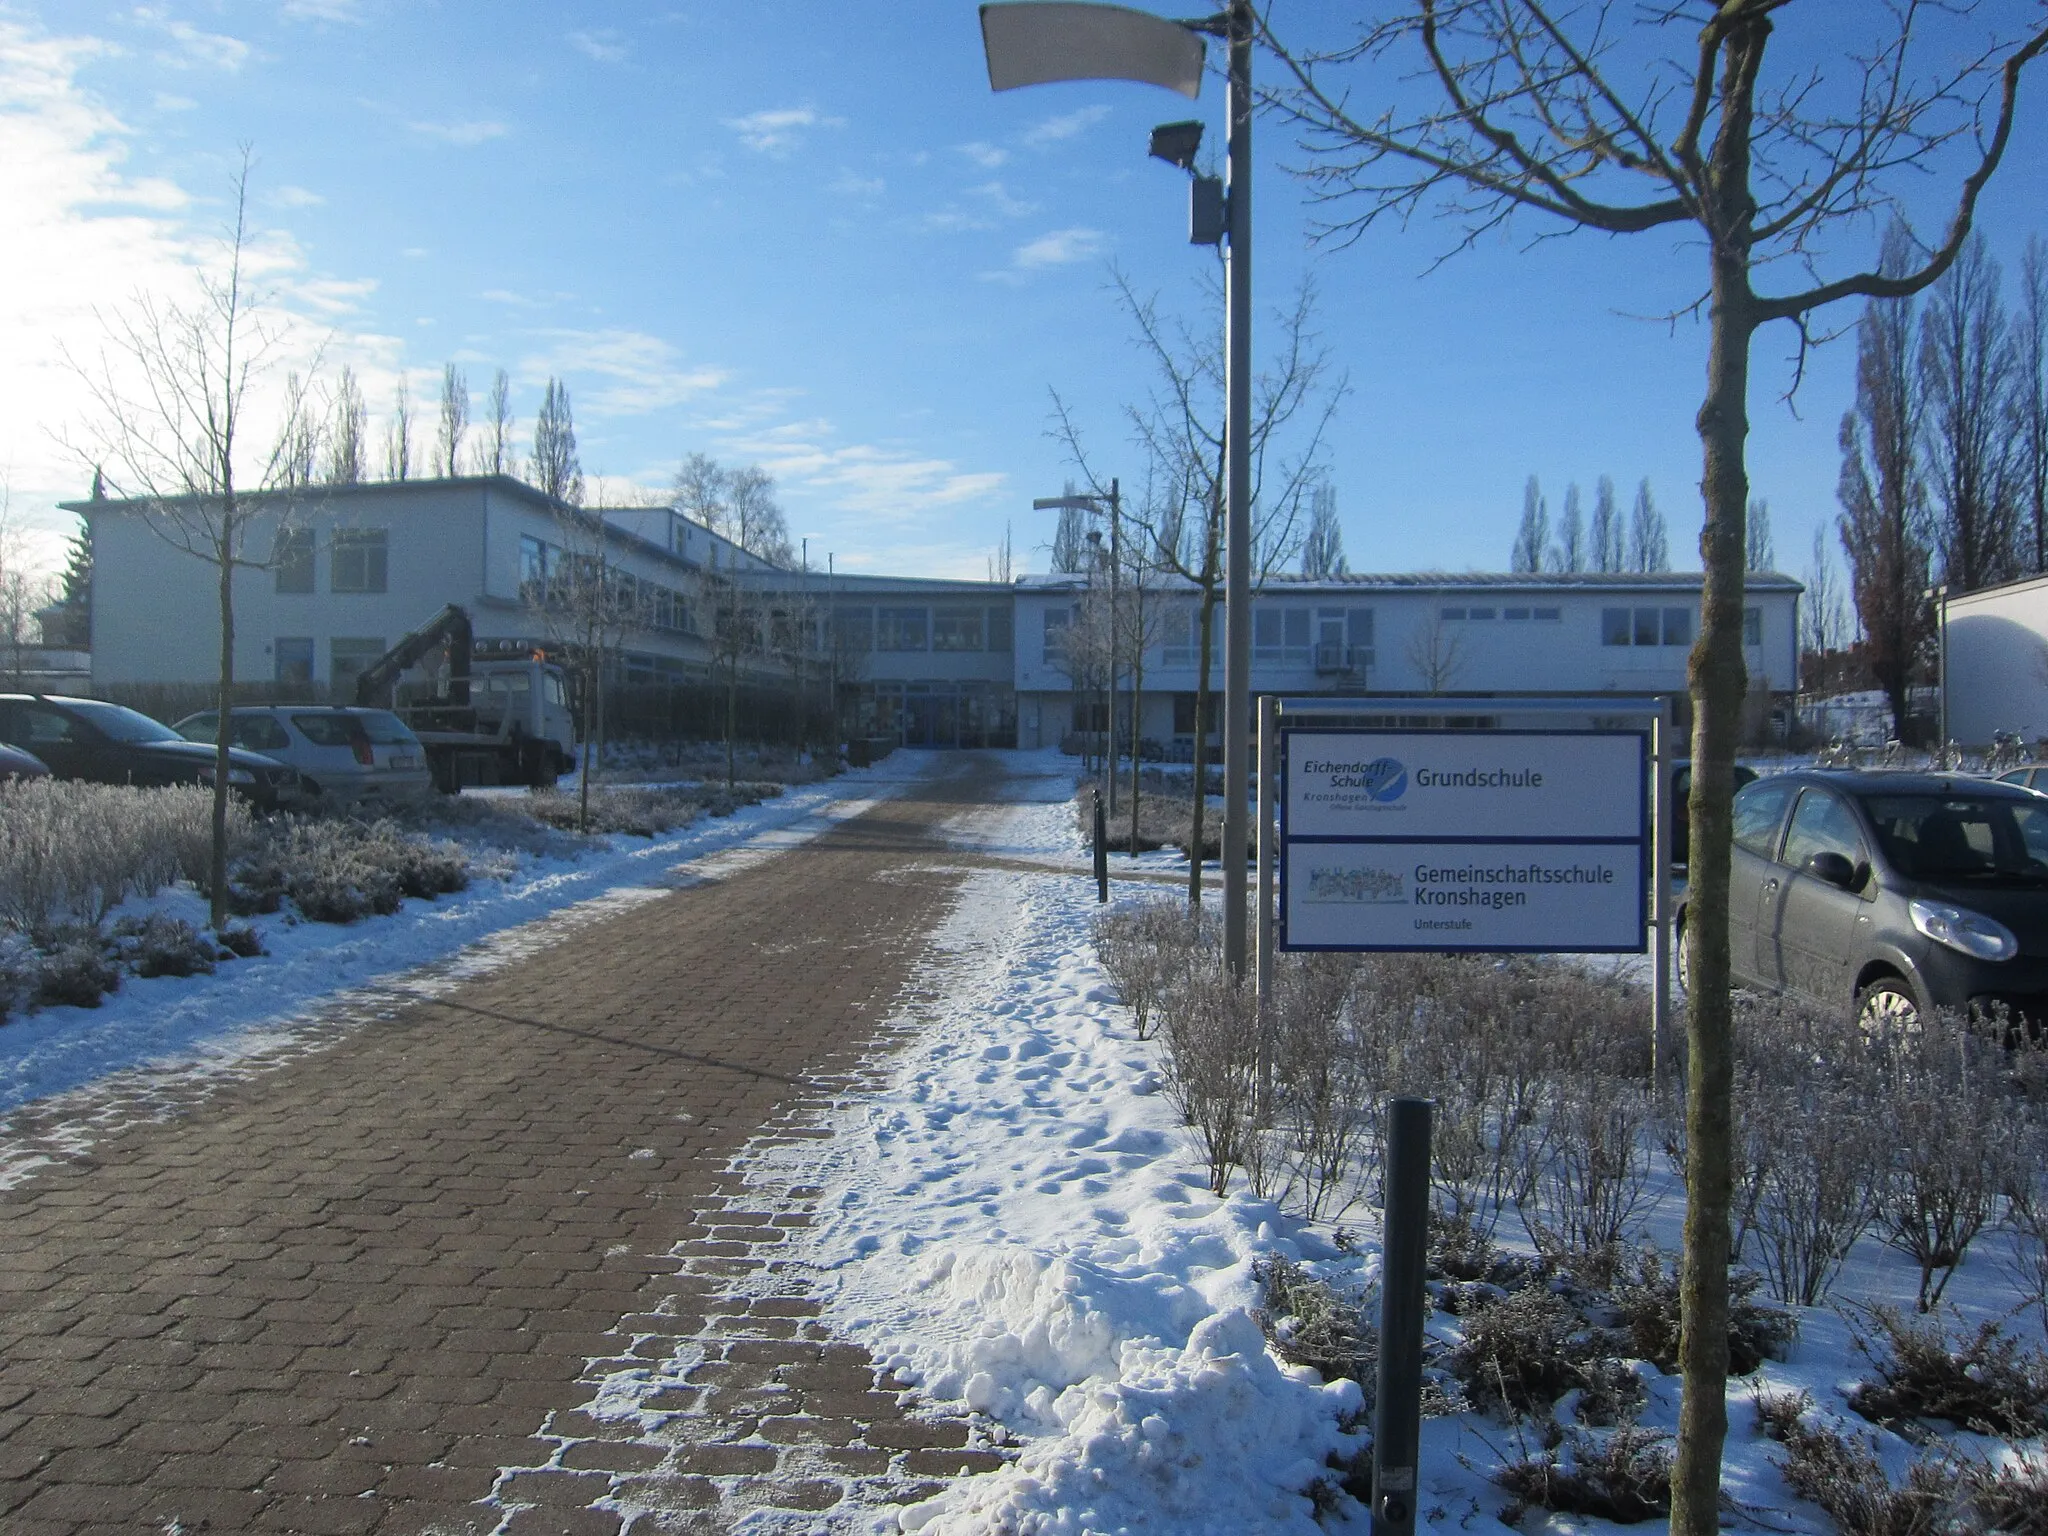 Photo showing: School "Eichendorff-Schule" in Kronshagen